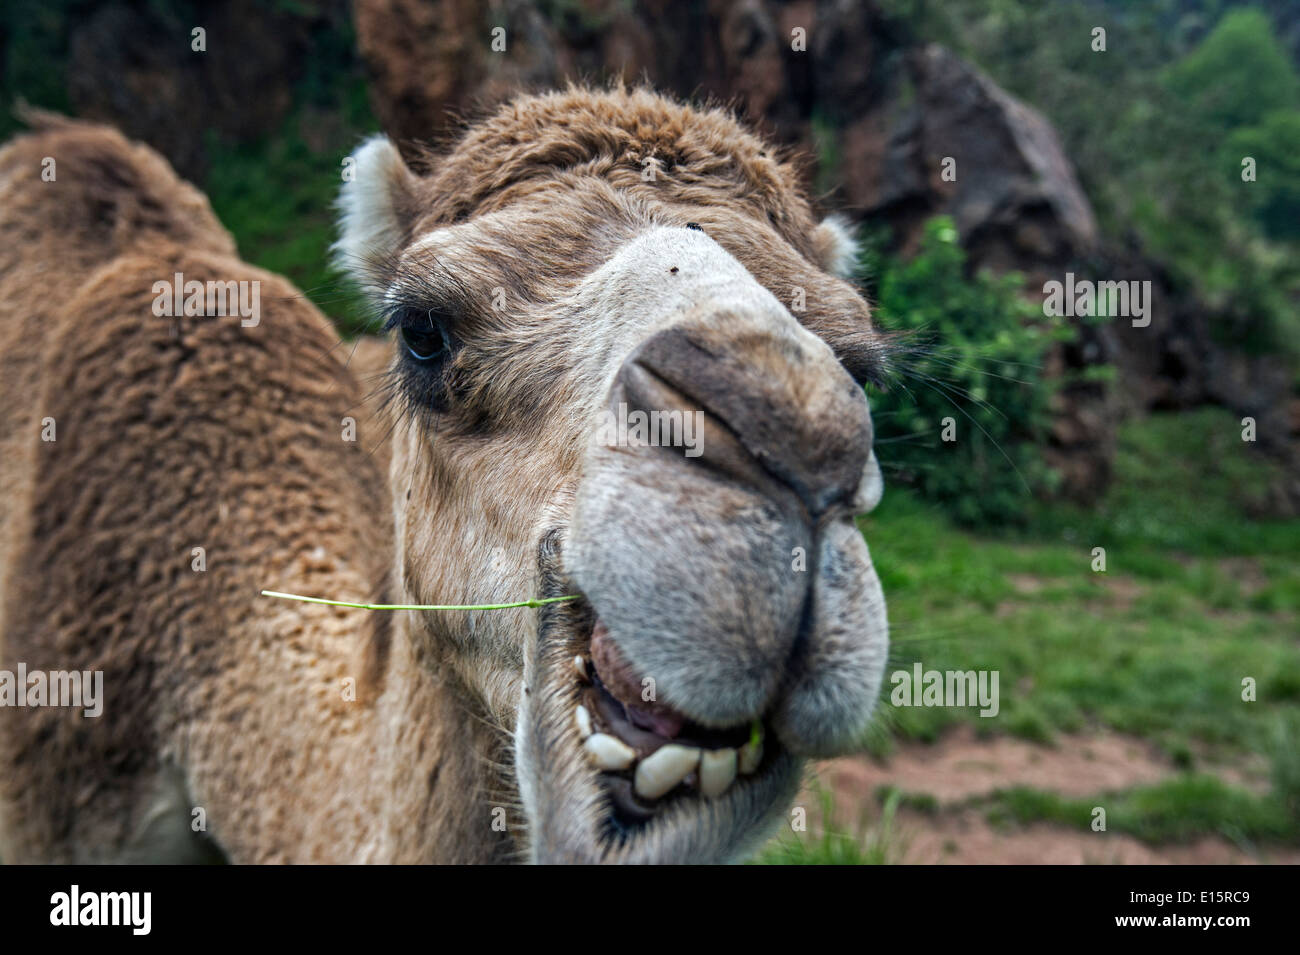 Dromedary / Arabian camel / Indian camel (Camelus dromedarius) close up of head chewing grass stalk Stock Photo